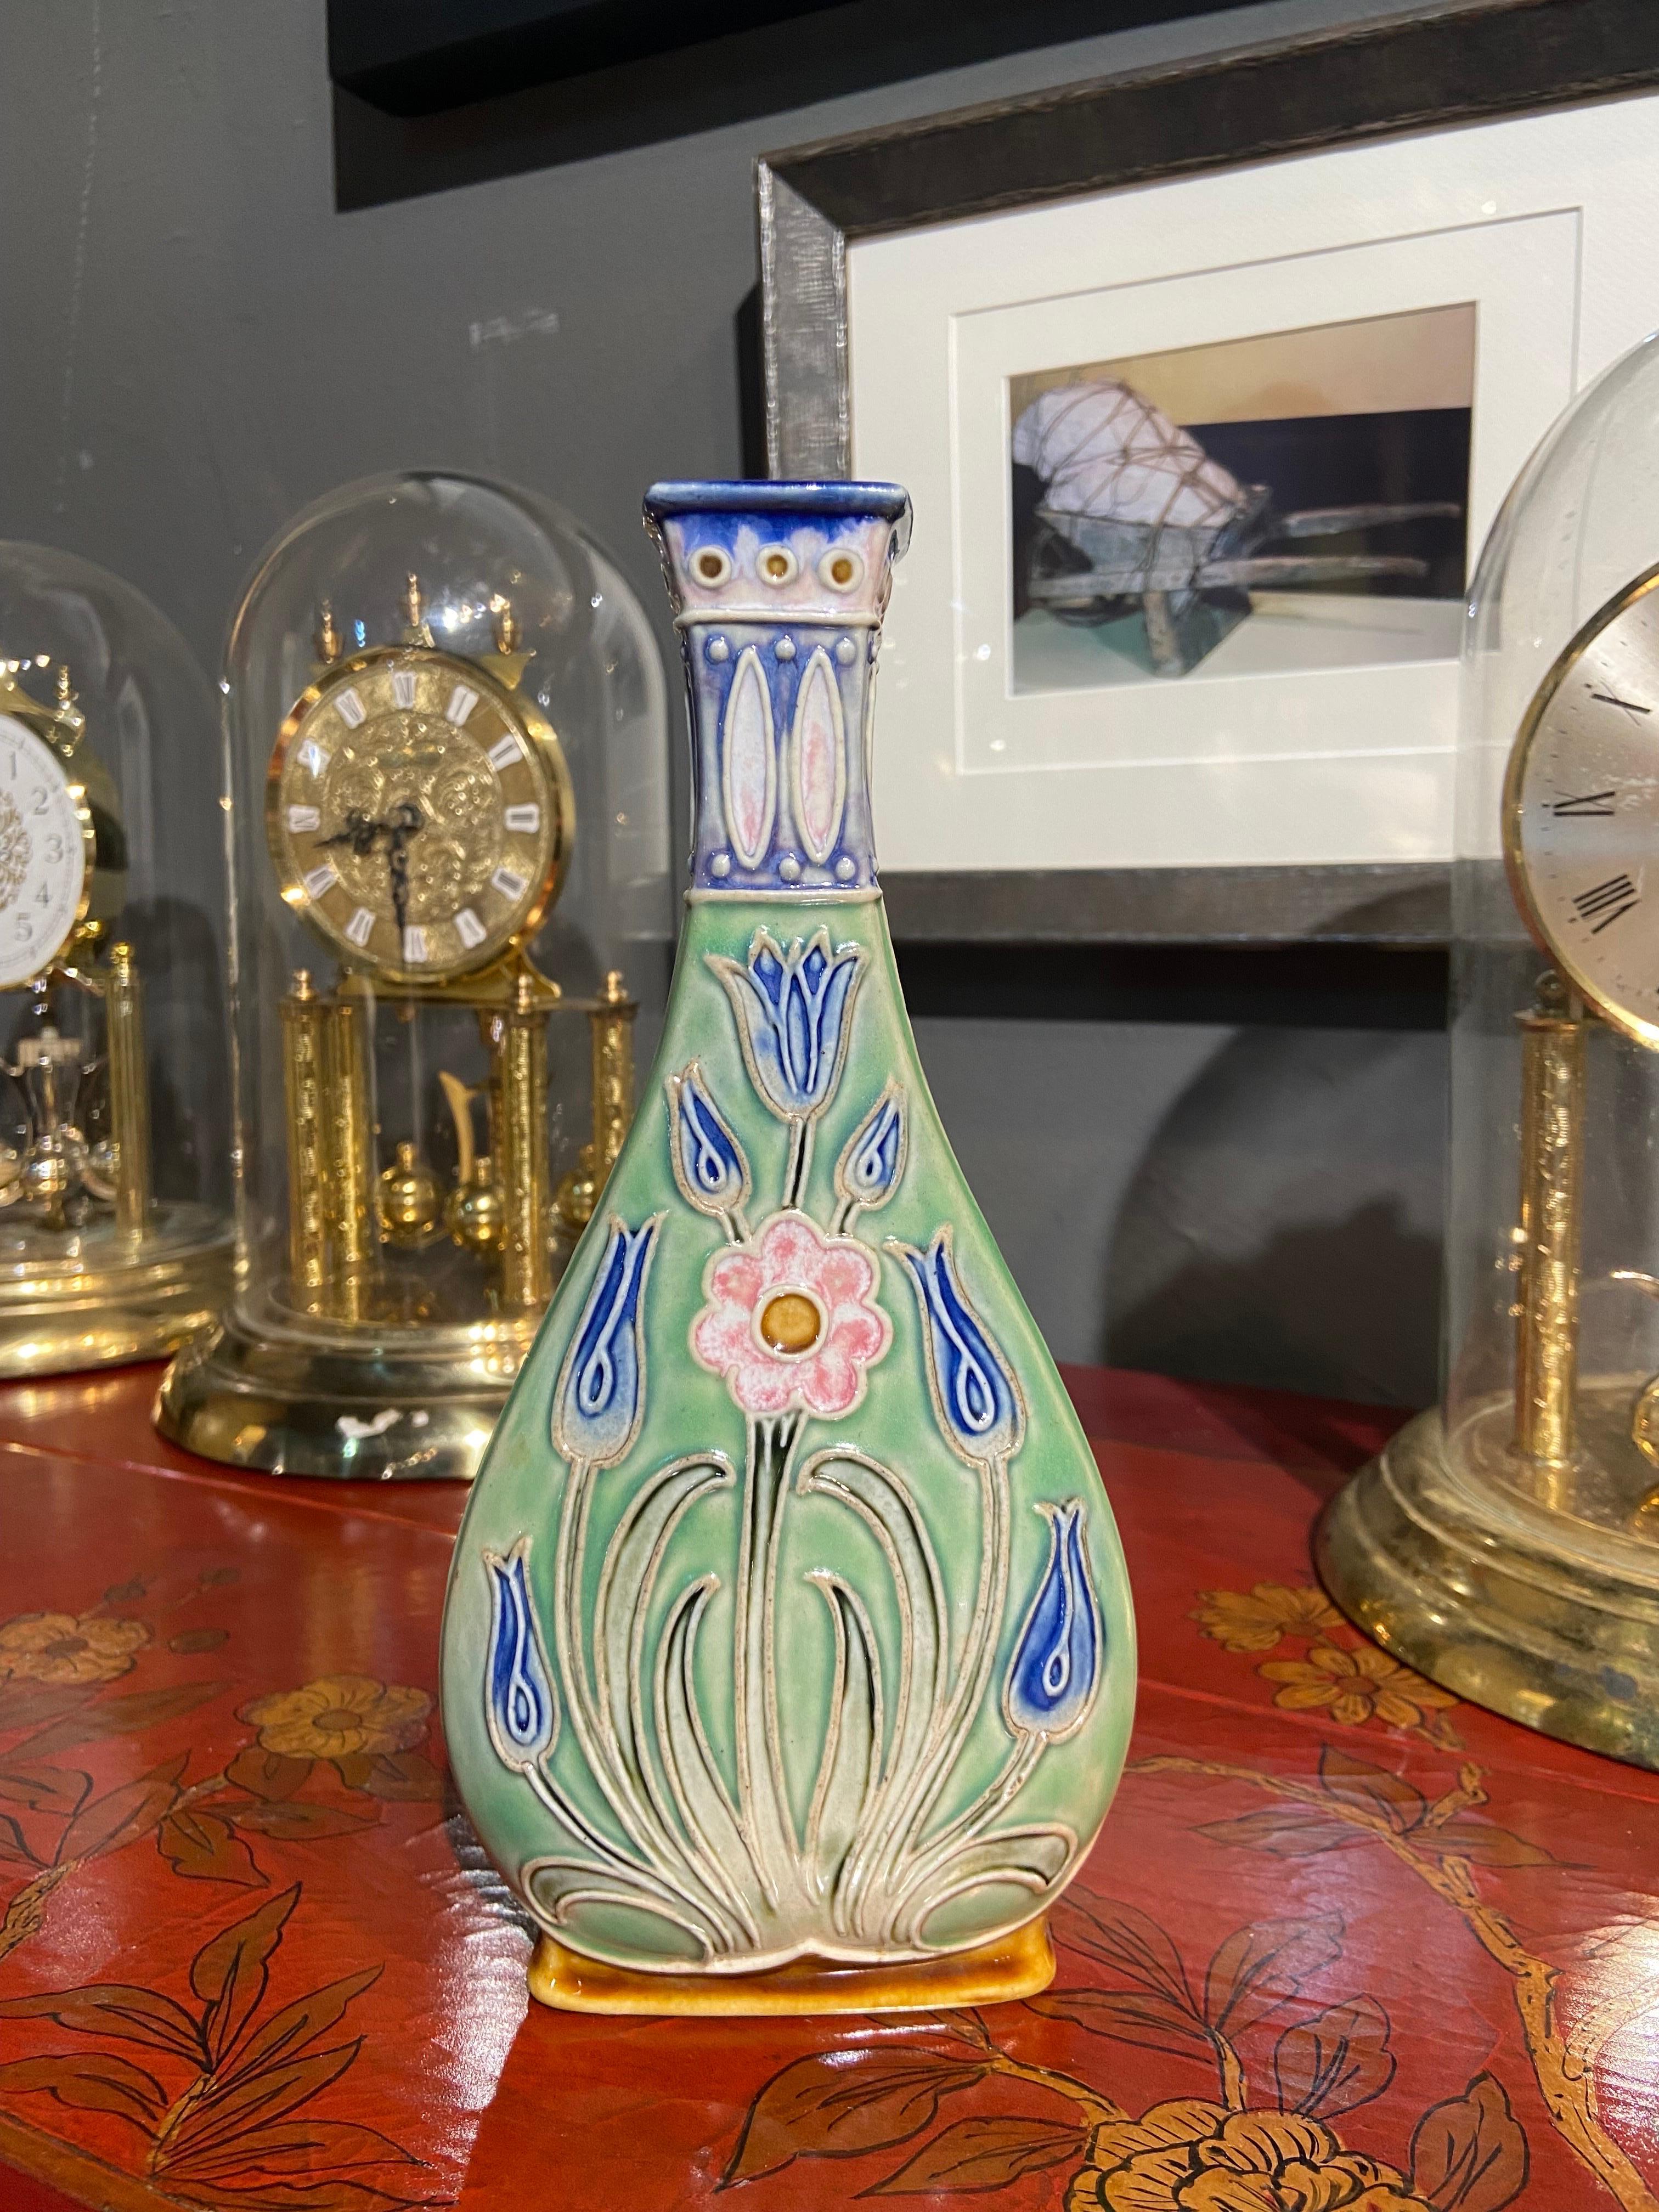 Un rare et étonnant vase Doulton Lambeth Art Nouveau décoré en thème floral en bleu clair et vert. Le vase porte la marque Royal Doulton Lambeth ainsi que le numéro 7759.
Angleterre.